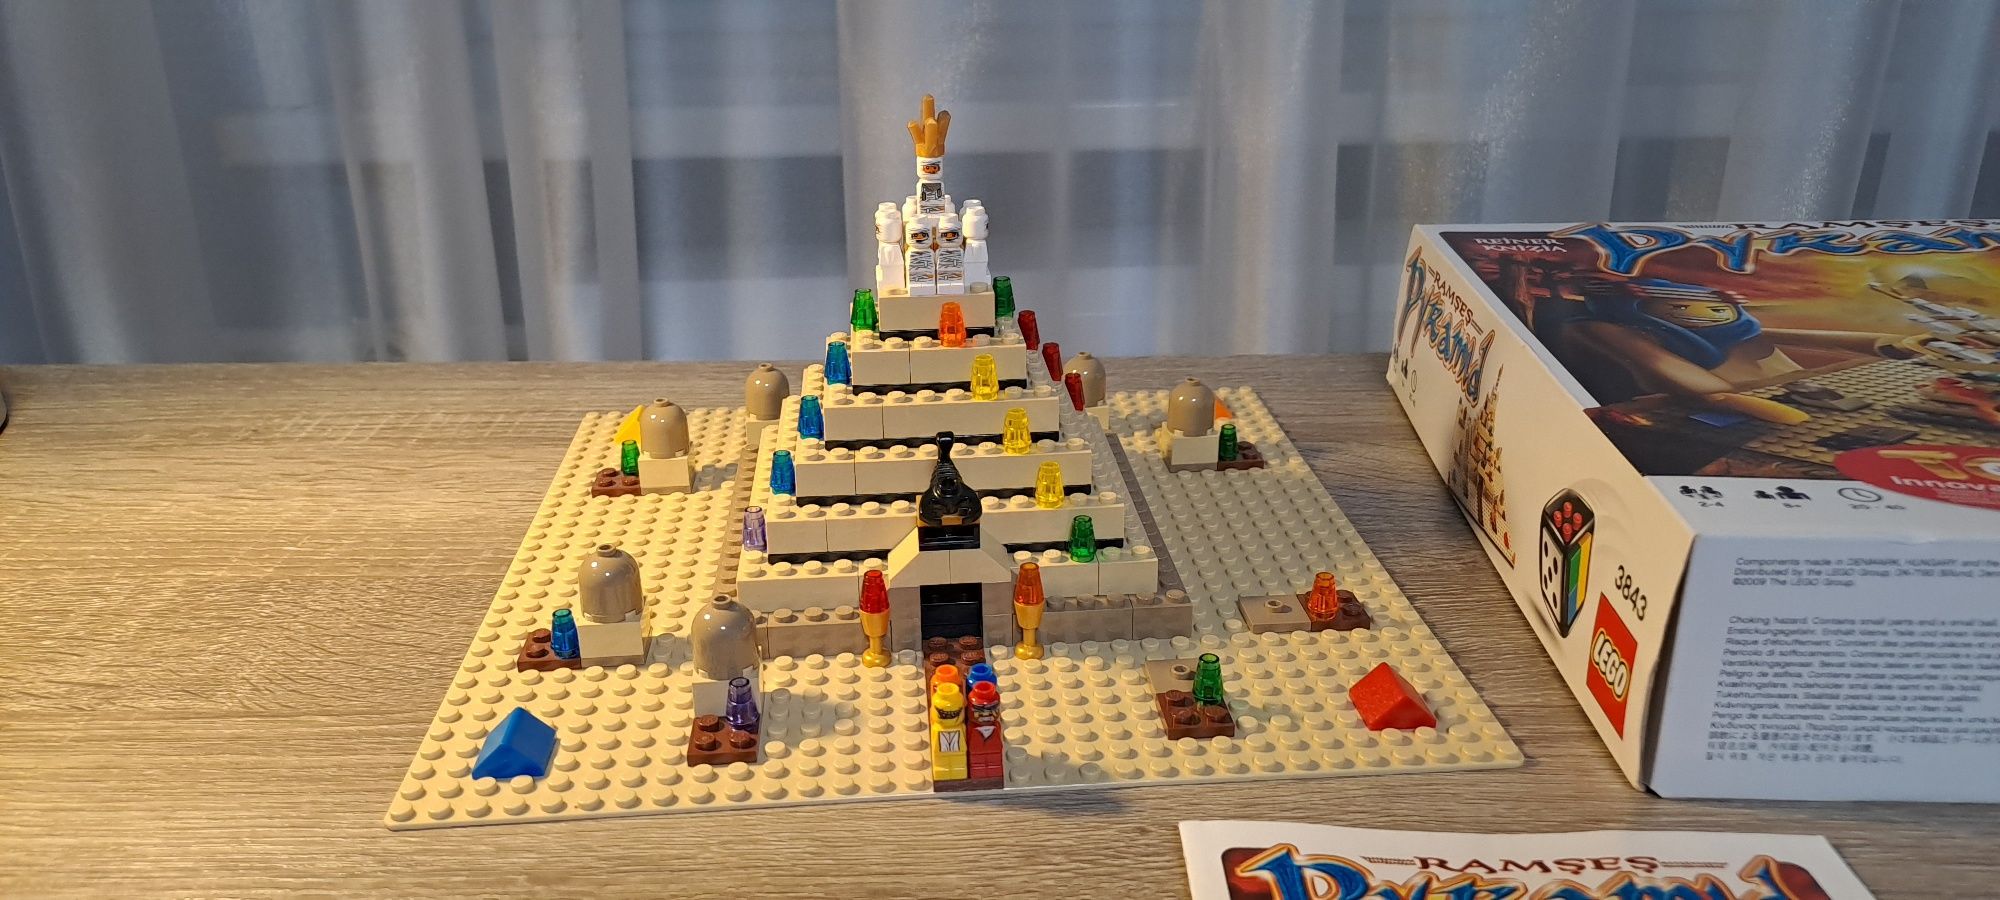 Lego Pyramid 3843